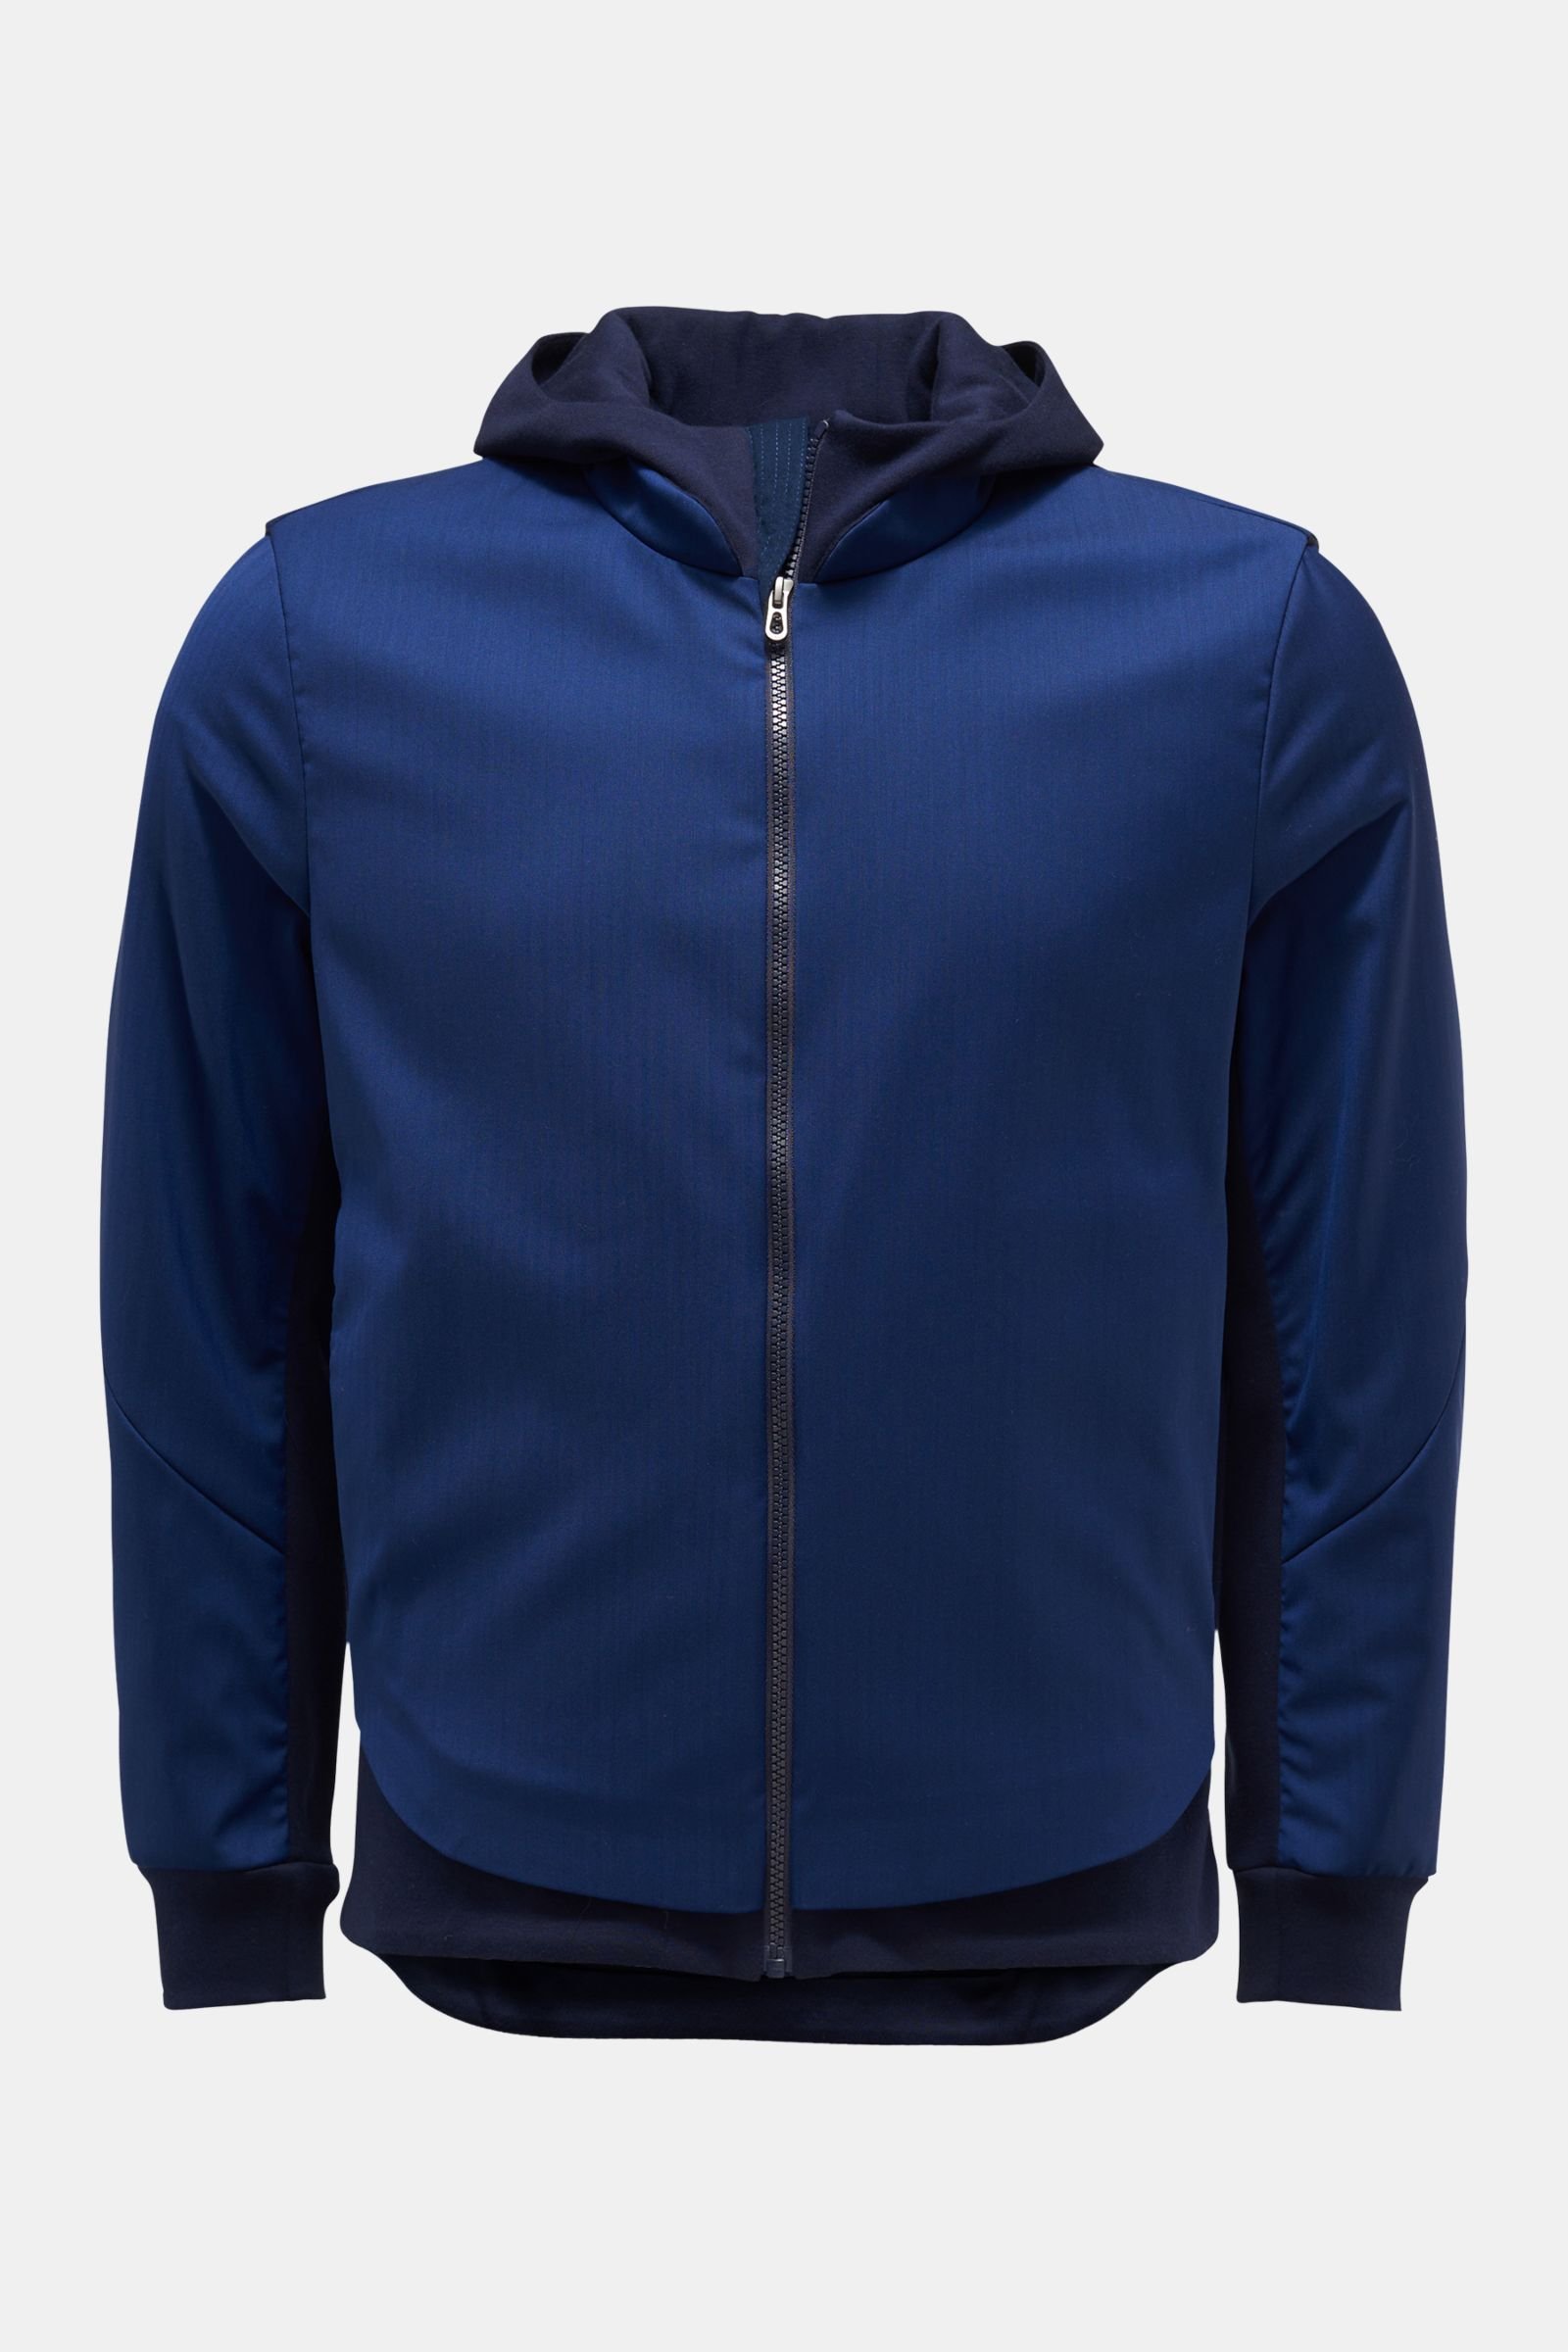 Sweat jacket 'Tailorhood 2.0' dark blue/navy